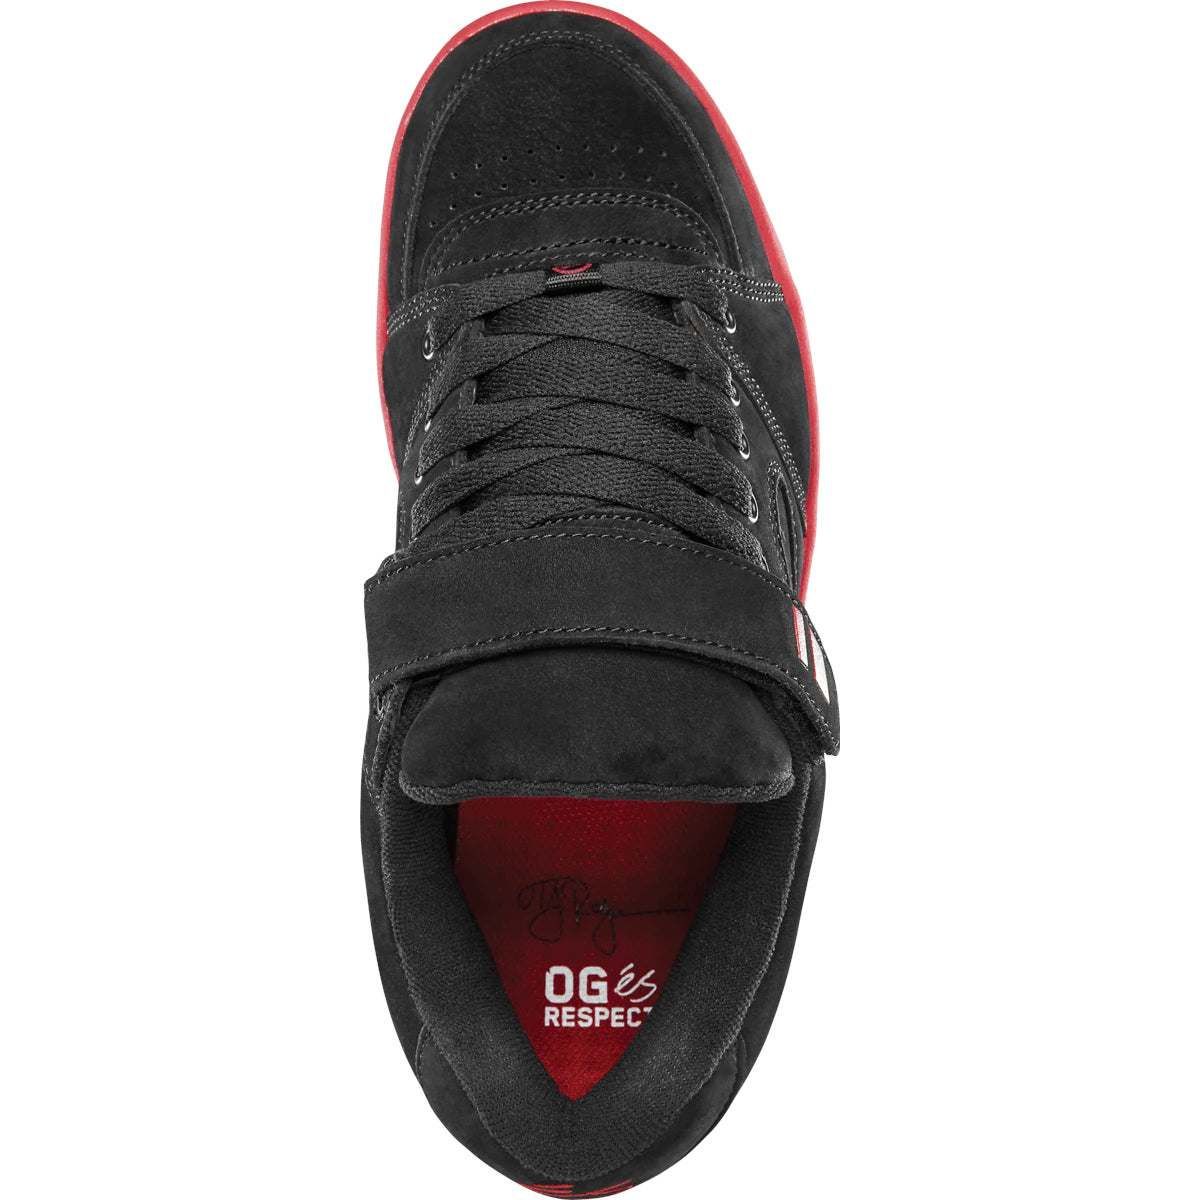 Black/Red TJ Rogers Accel OG Plus eS Skateboard Shoe Top